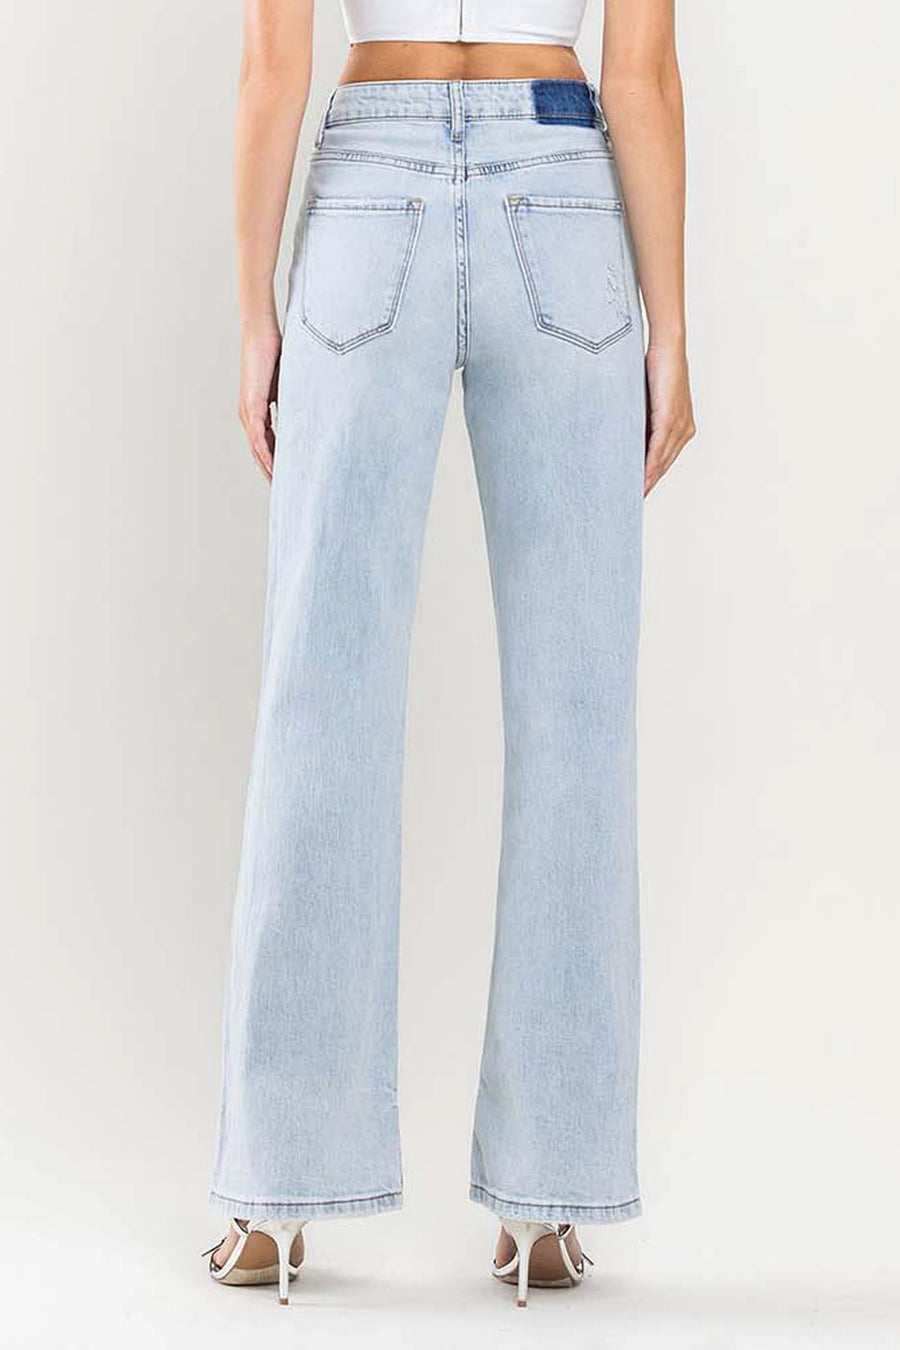 Bella V Boutique Vintage Wash Flare Full Length Jeans